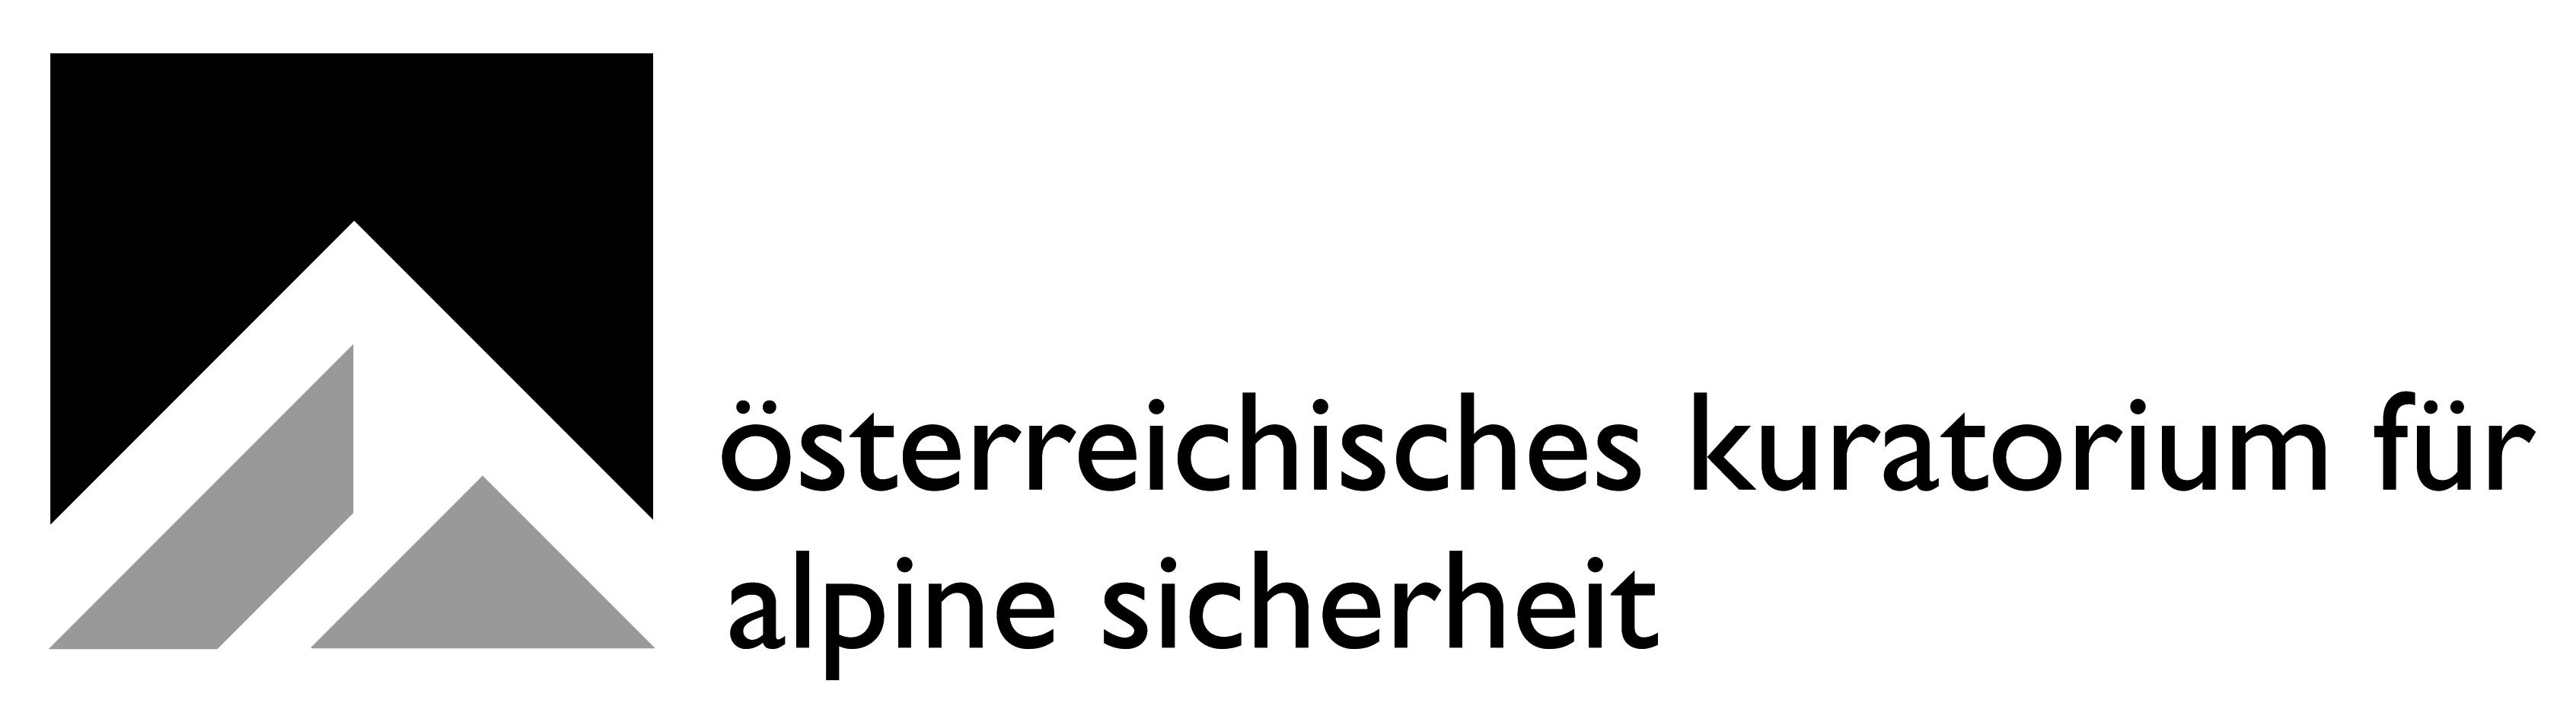 Австрийский совет по альпийской безопасности (Österreichisches Kuratorium für Alpine Sicherheit / KURASI).